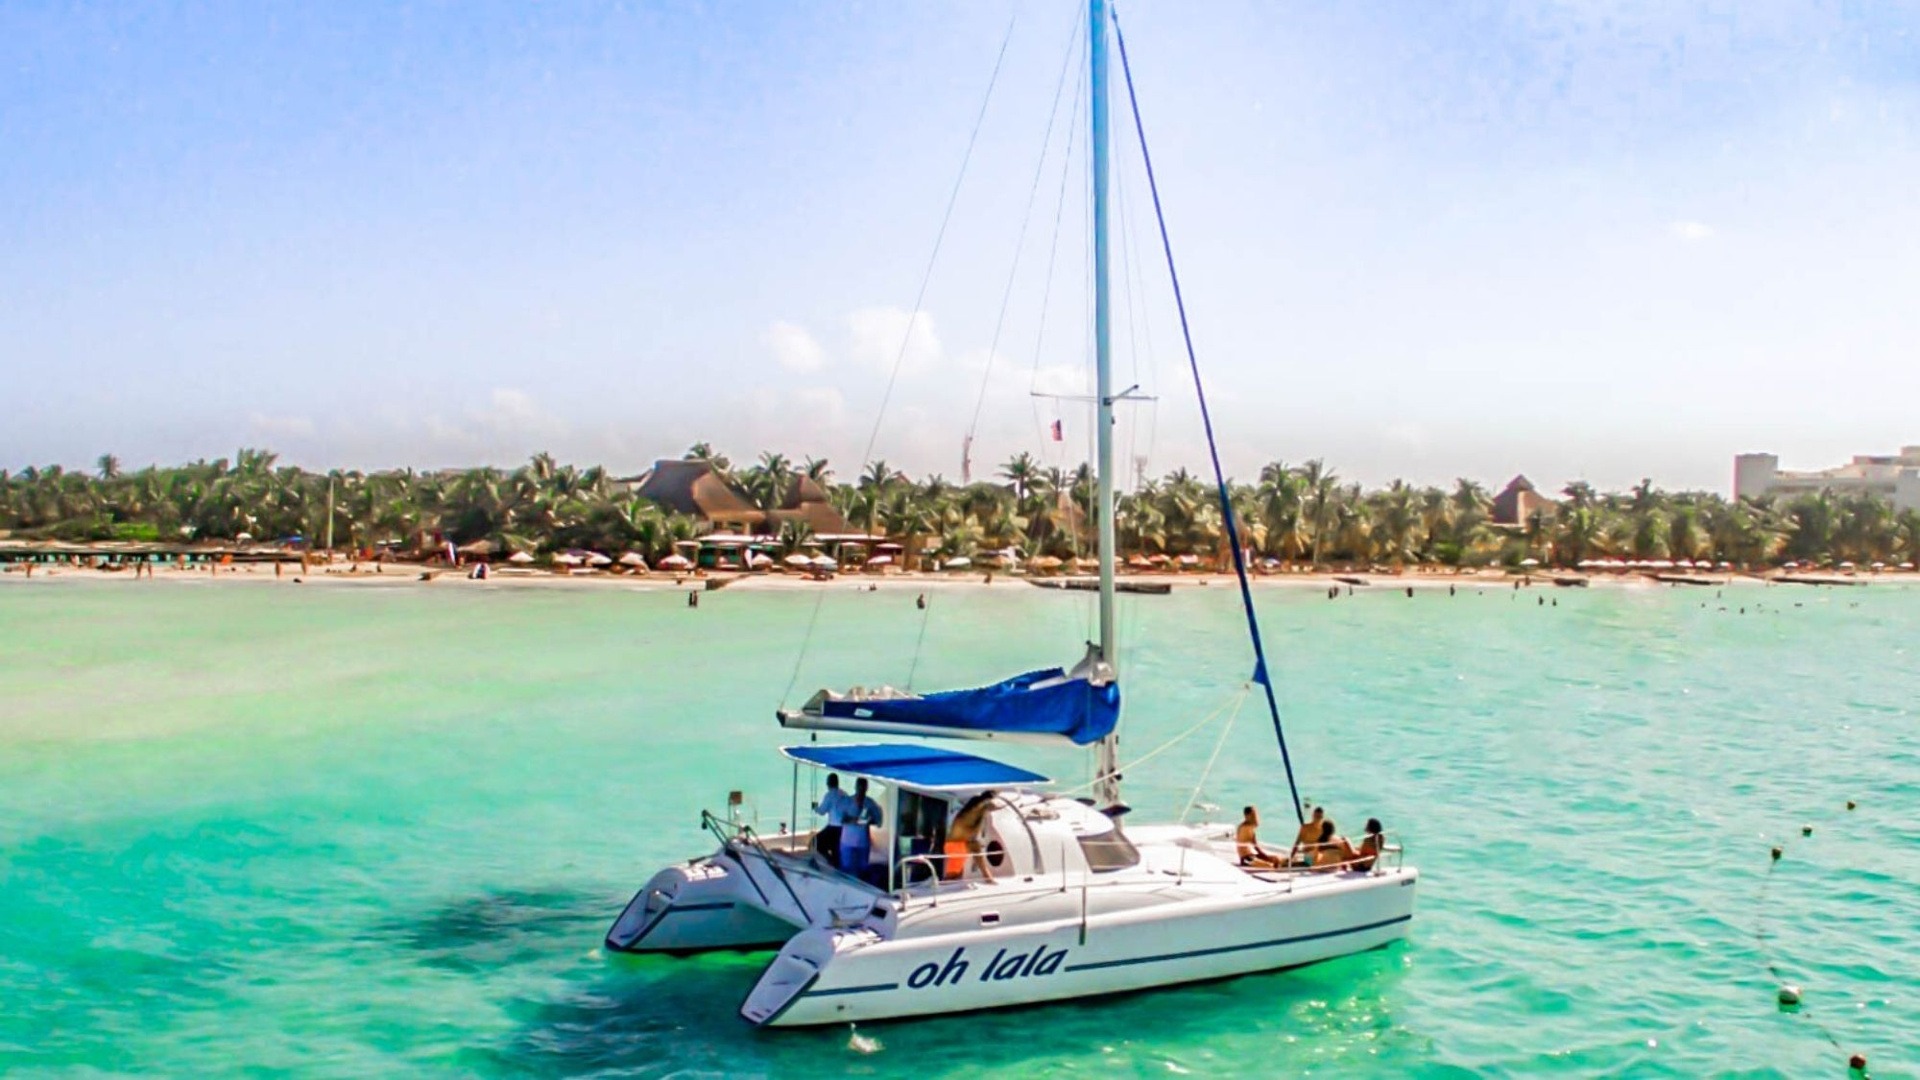 Oh La La - Private tour to Isla Mujeres in catamaran - Cancun Sailing